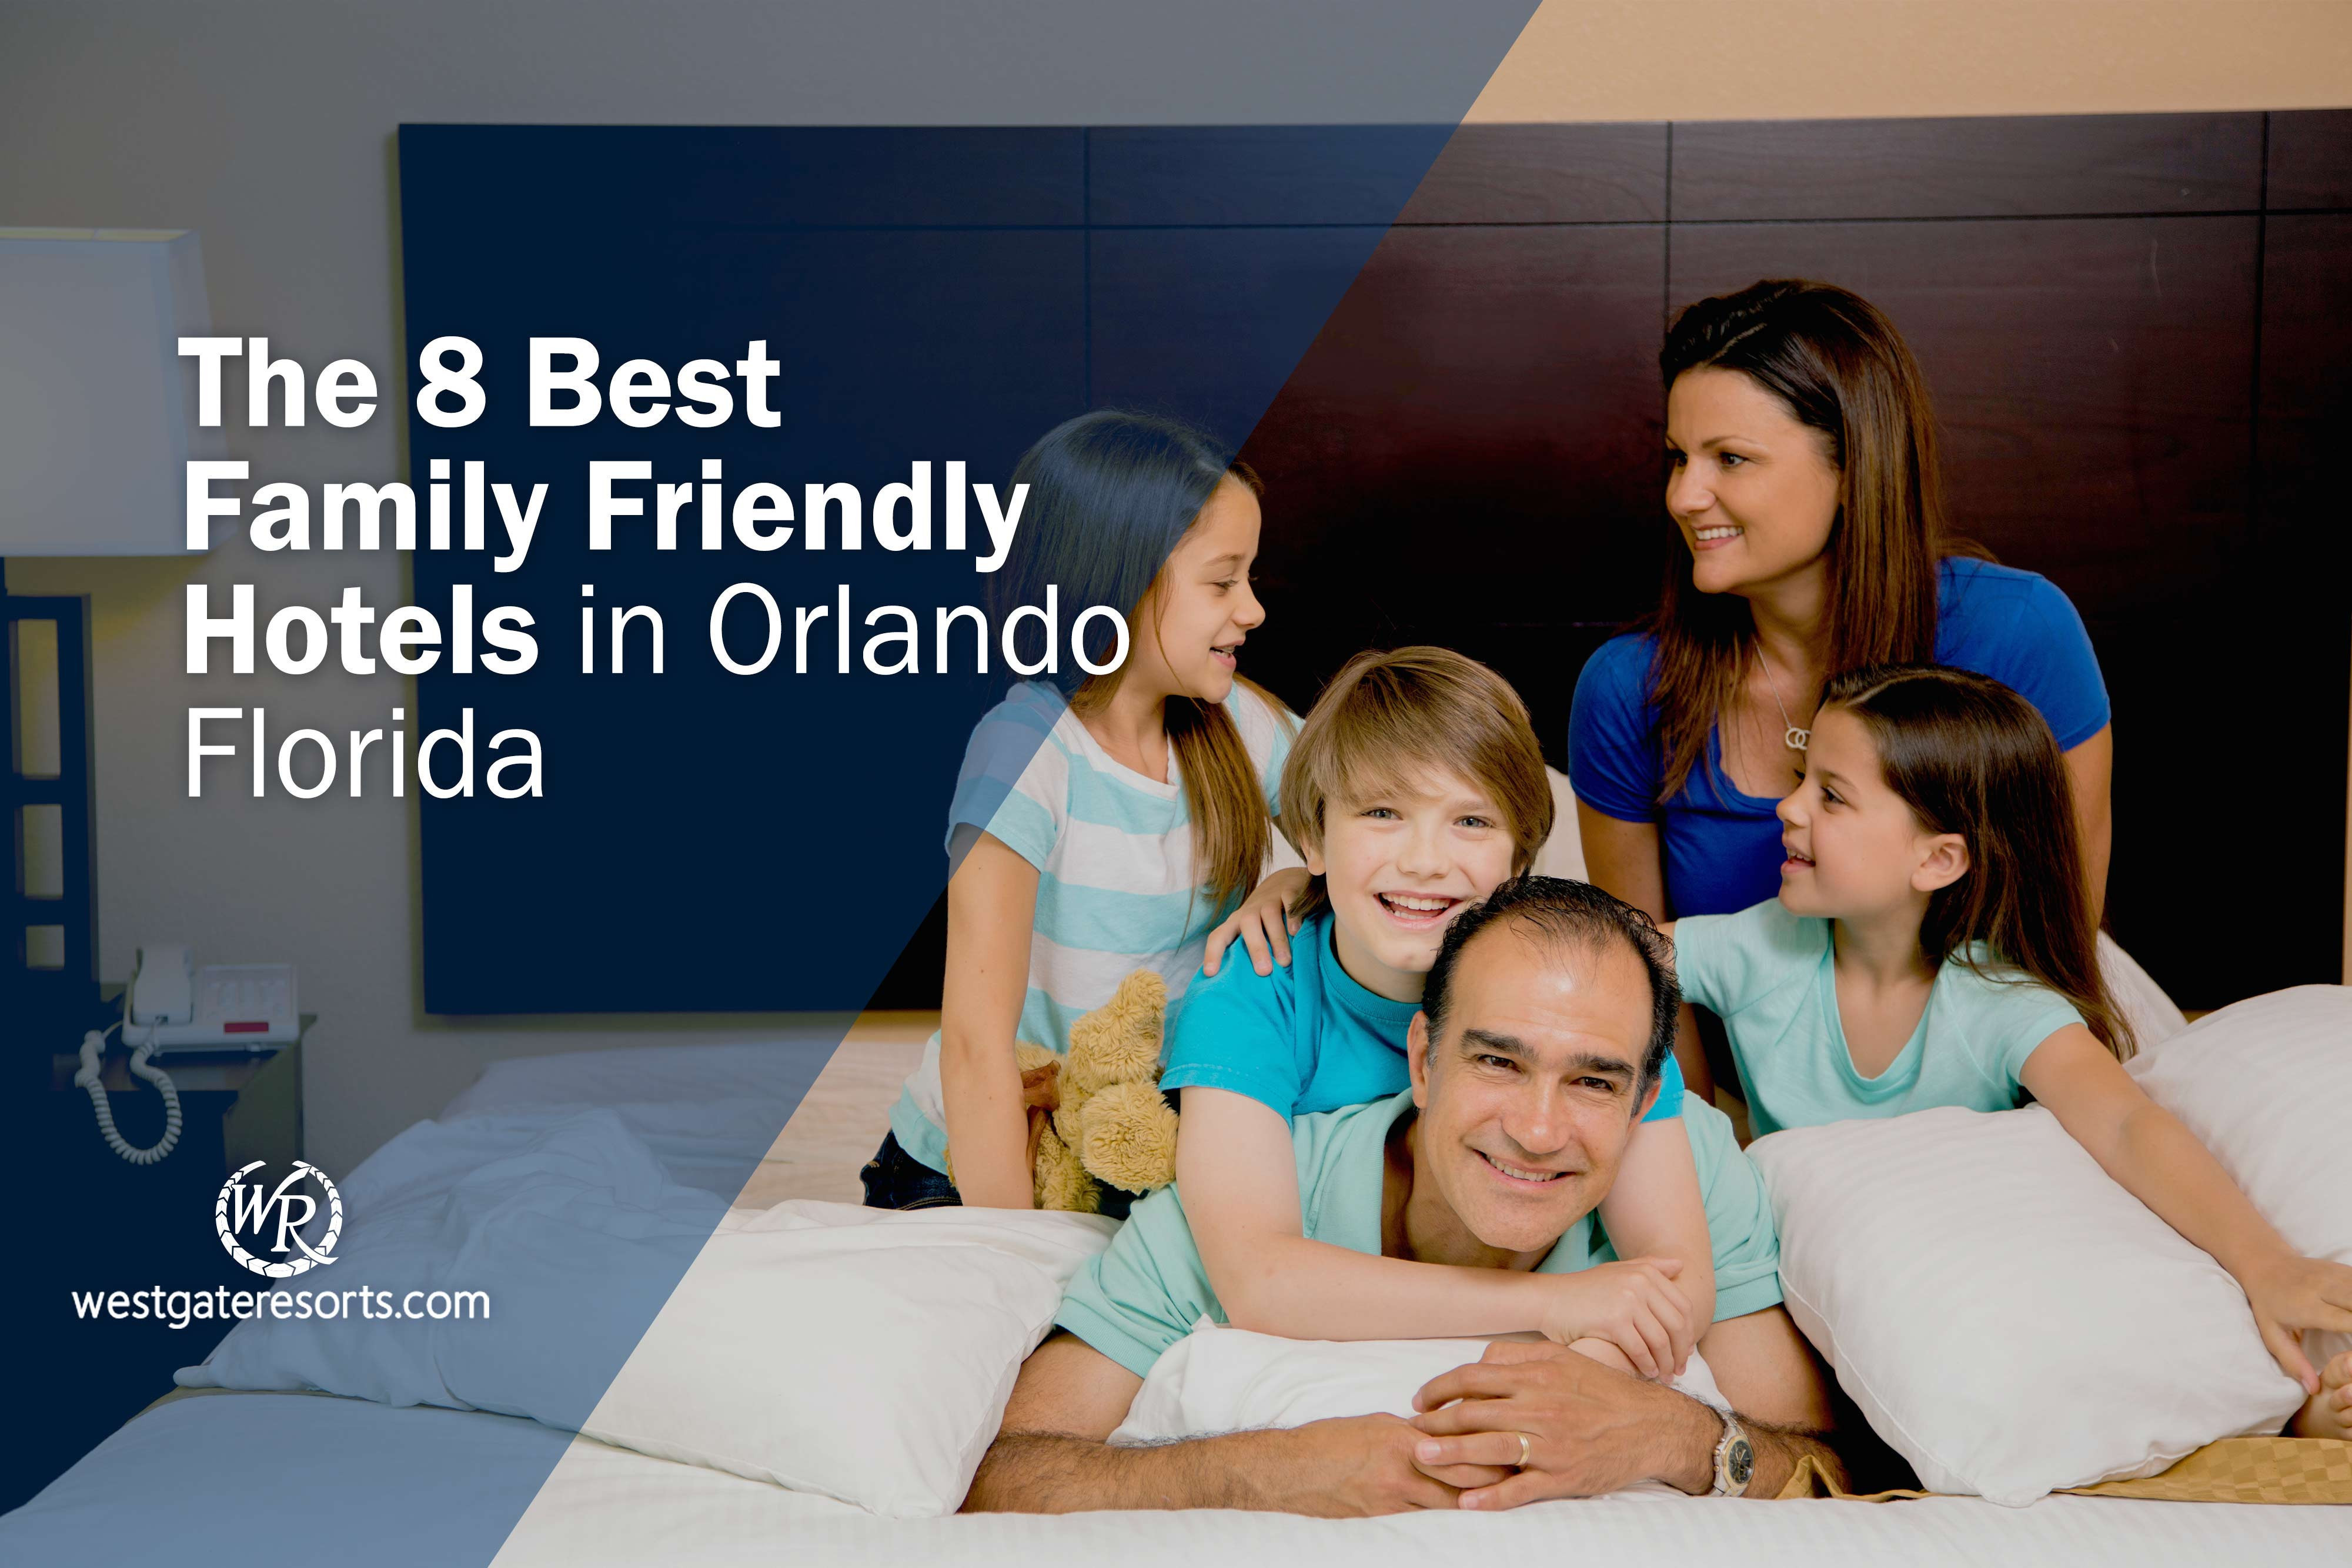 Los 8 mejores hoteles familiares en Orlando, Florida | Hoteles y Resorts Familiares en Orlando